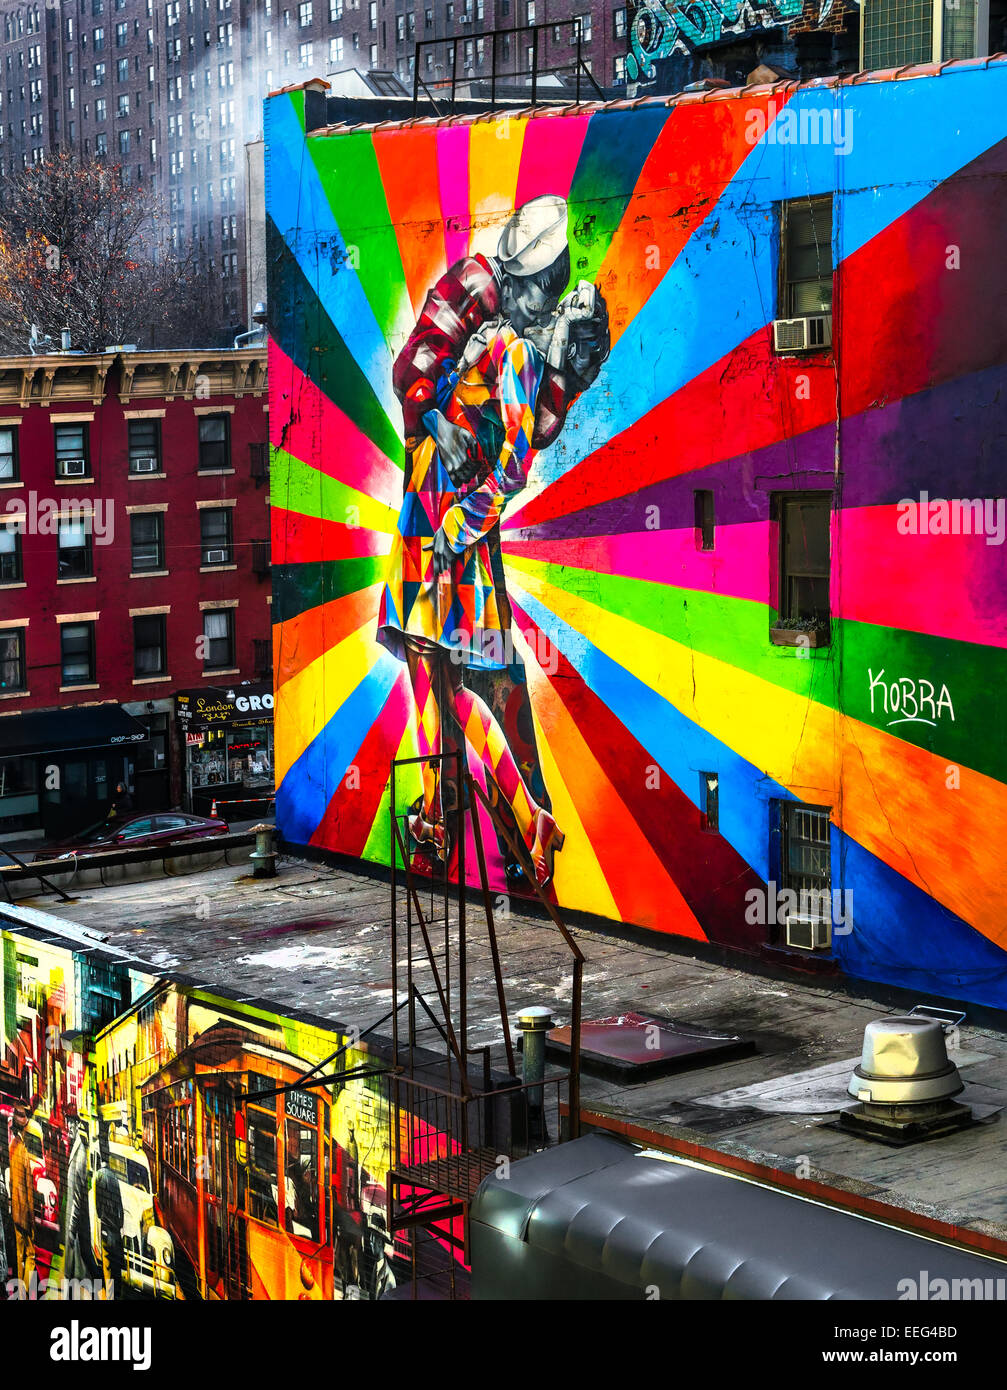 NEW YORK CITY - 01 décembre : Une peinture murale par artiste artiste brésilienne Kobra 01 Décembre, 2013 à New York, USA. La murale colorée est Banque D'Images